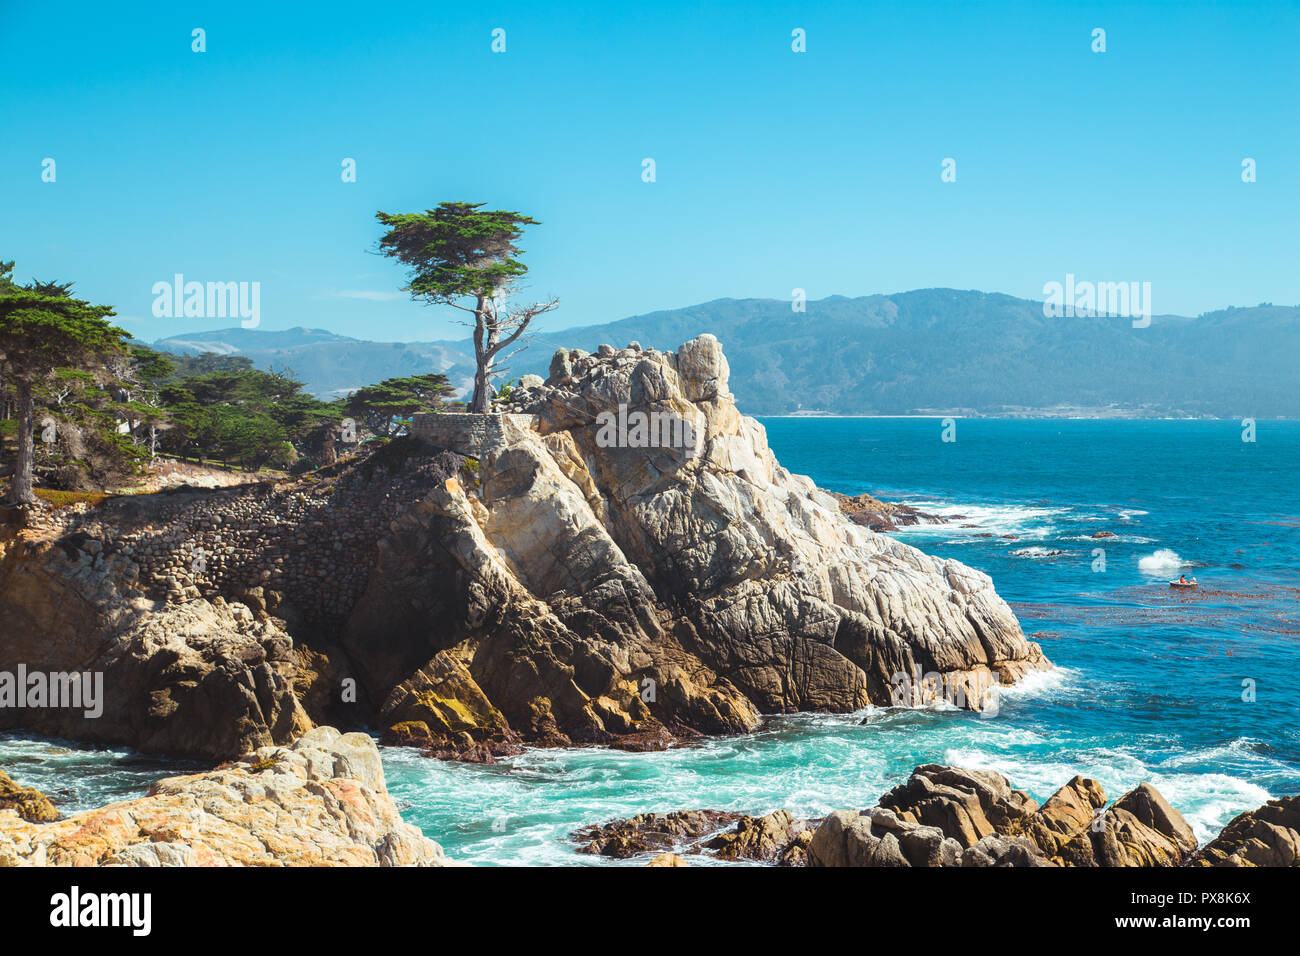 Vue de carte postale classique de fameux Lone Cypress, un repère sur une colline de granit au large de la Californie's scenic 17-Mile Drive dans la région de Pebble Beach Gated communauté o Banque D'Images